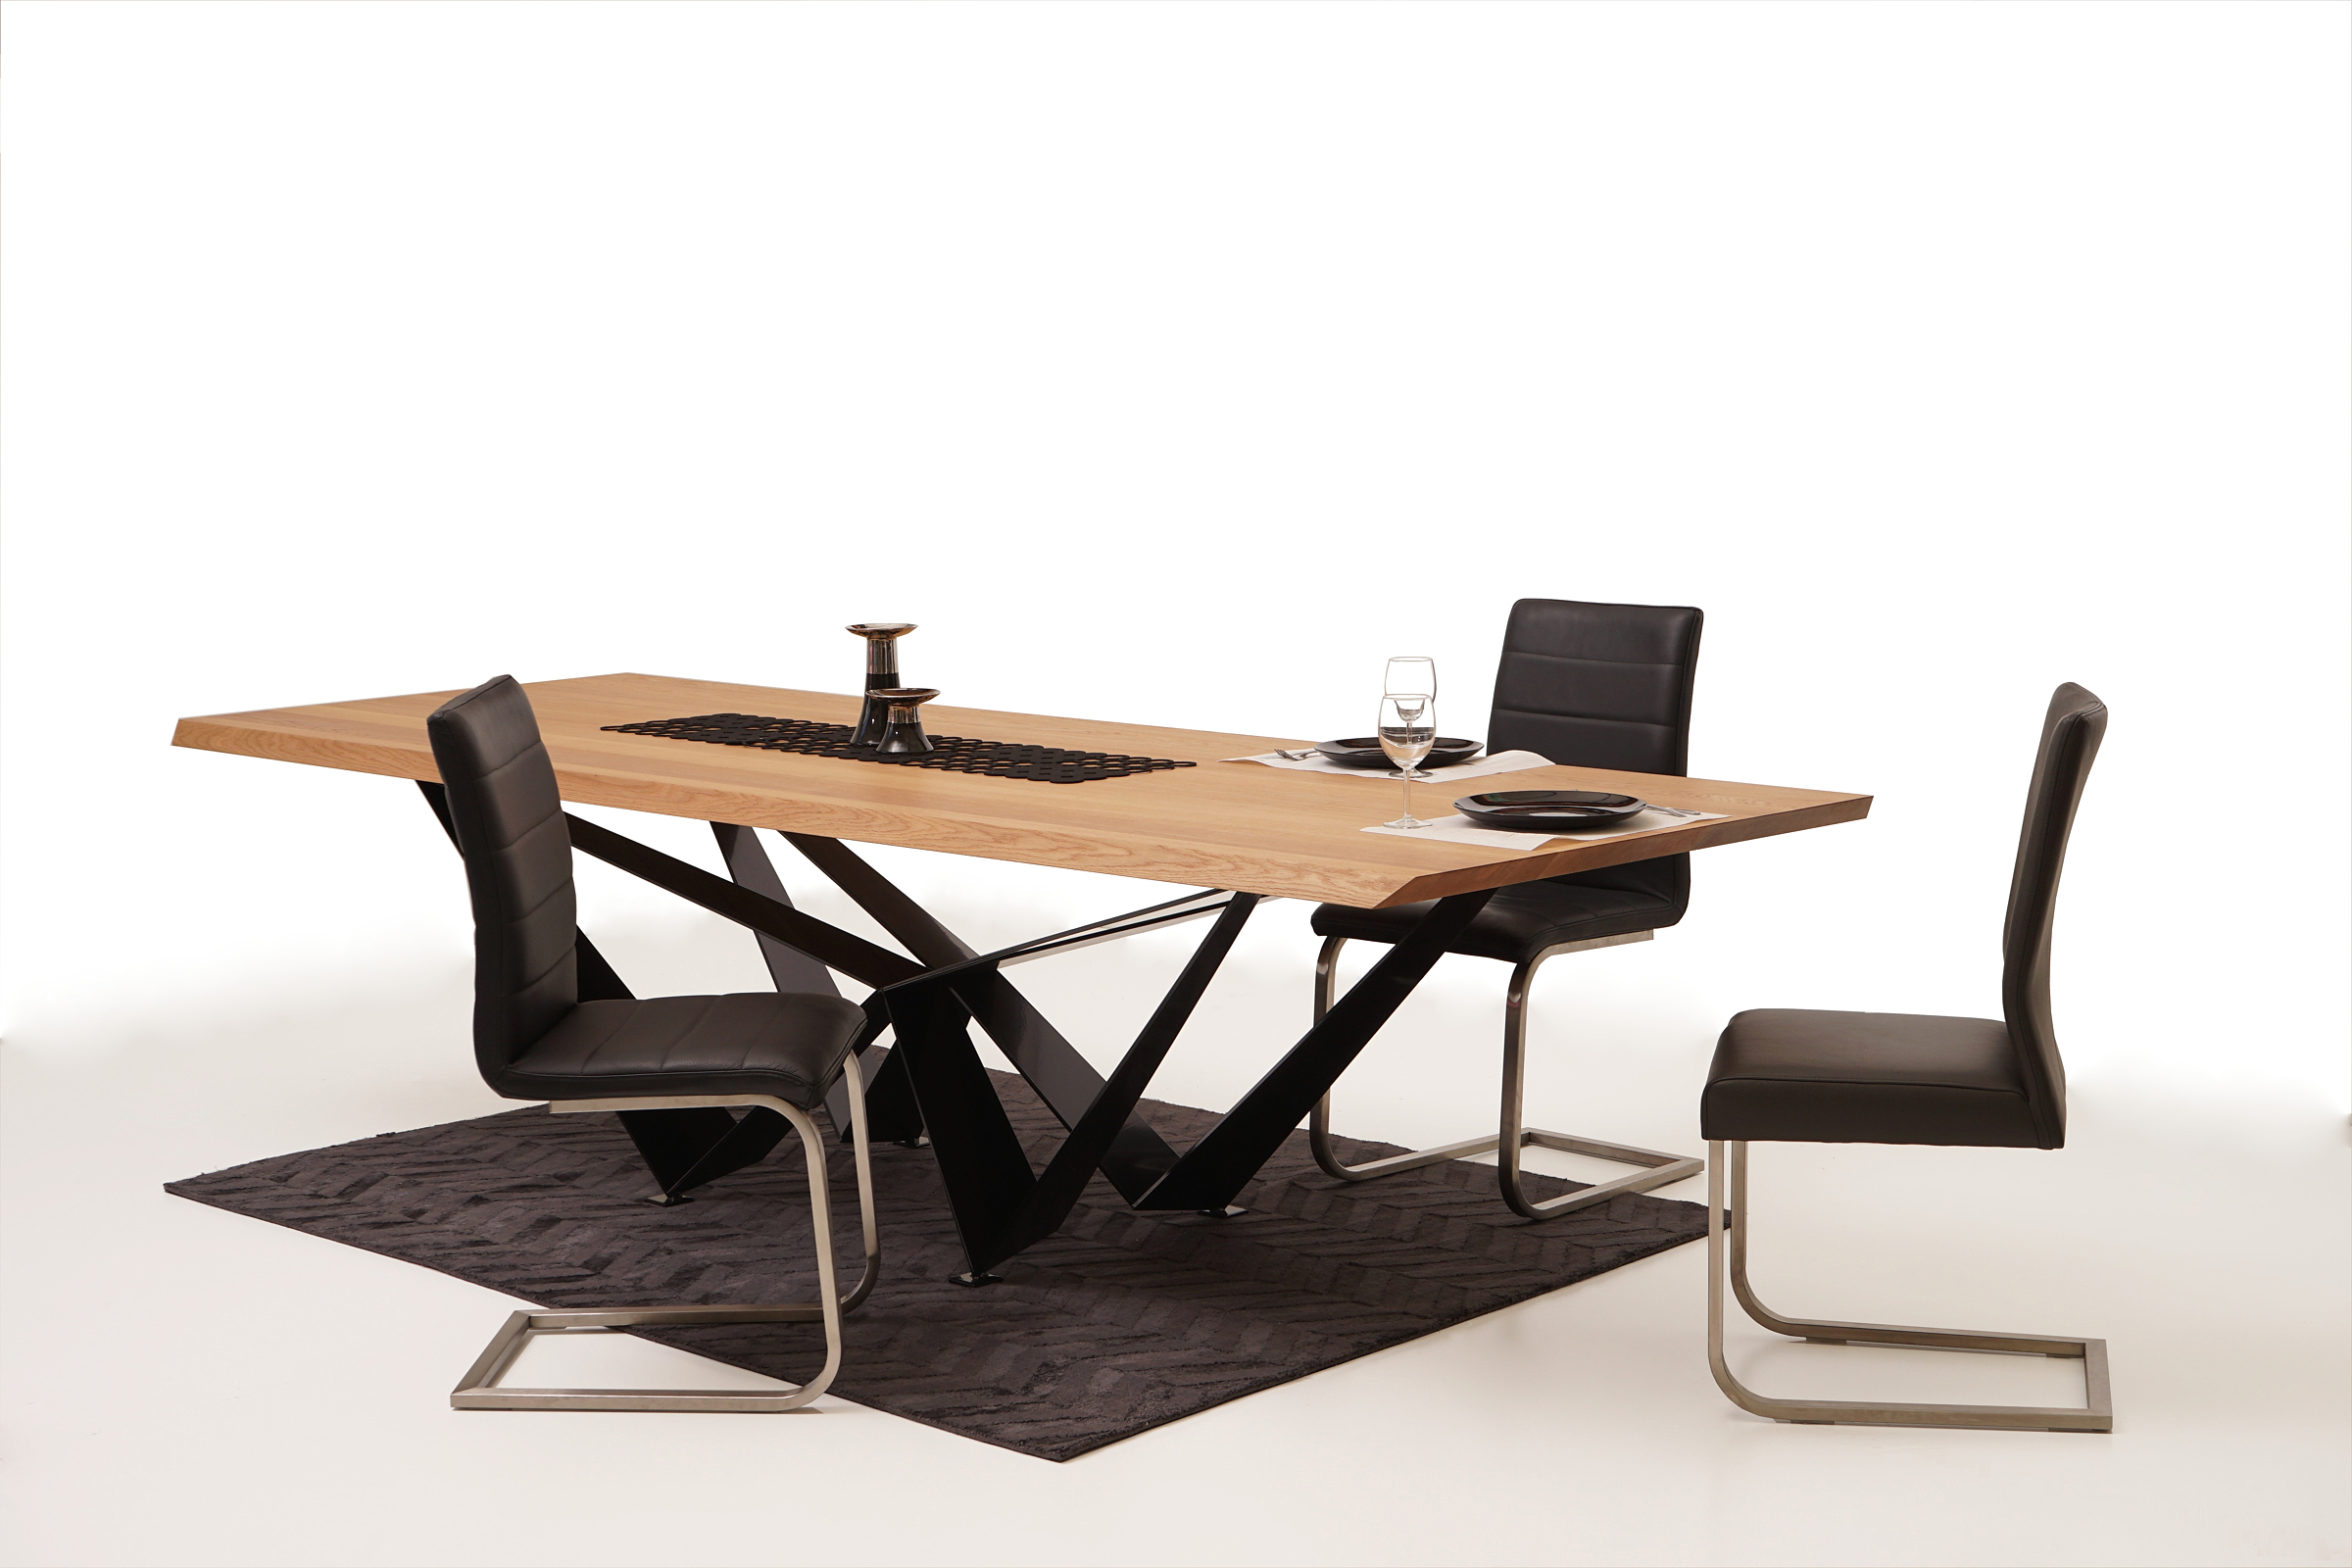 Nuvo nowoczesny salon aranżacja z krzesłami metalowymi skórzanymi